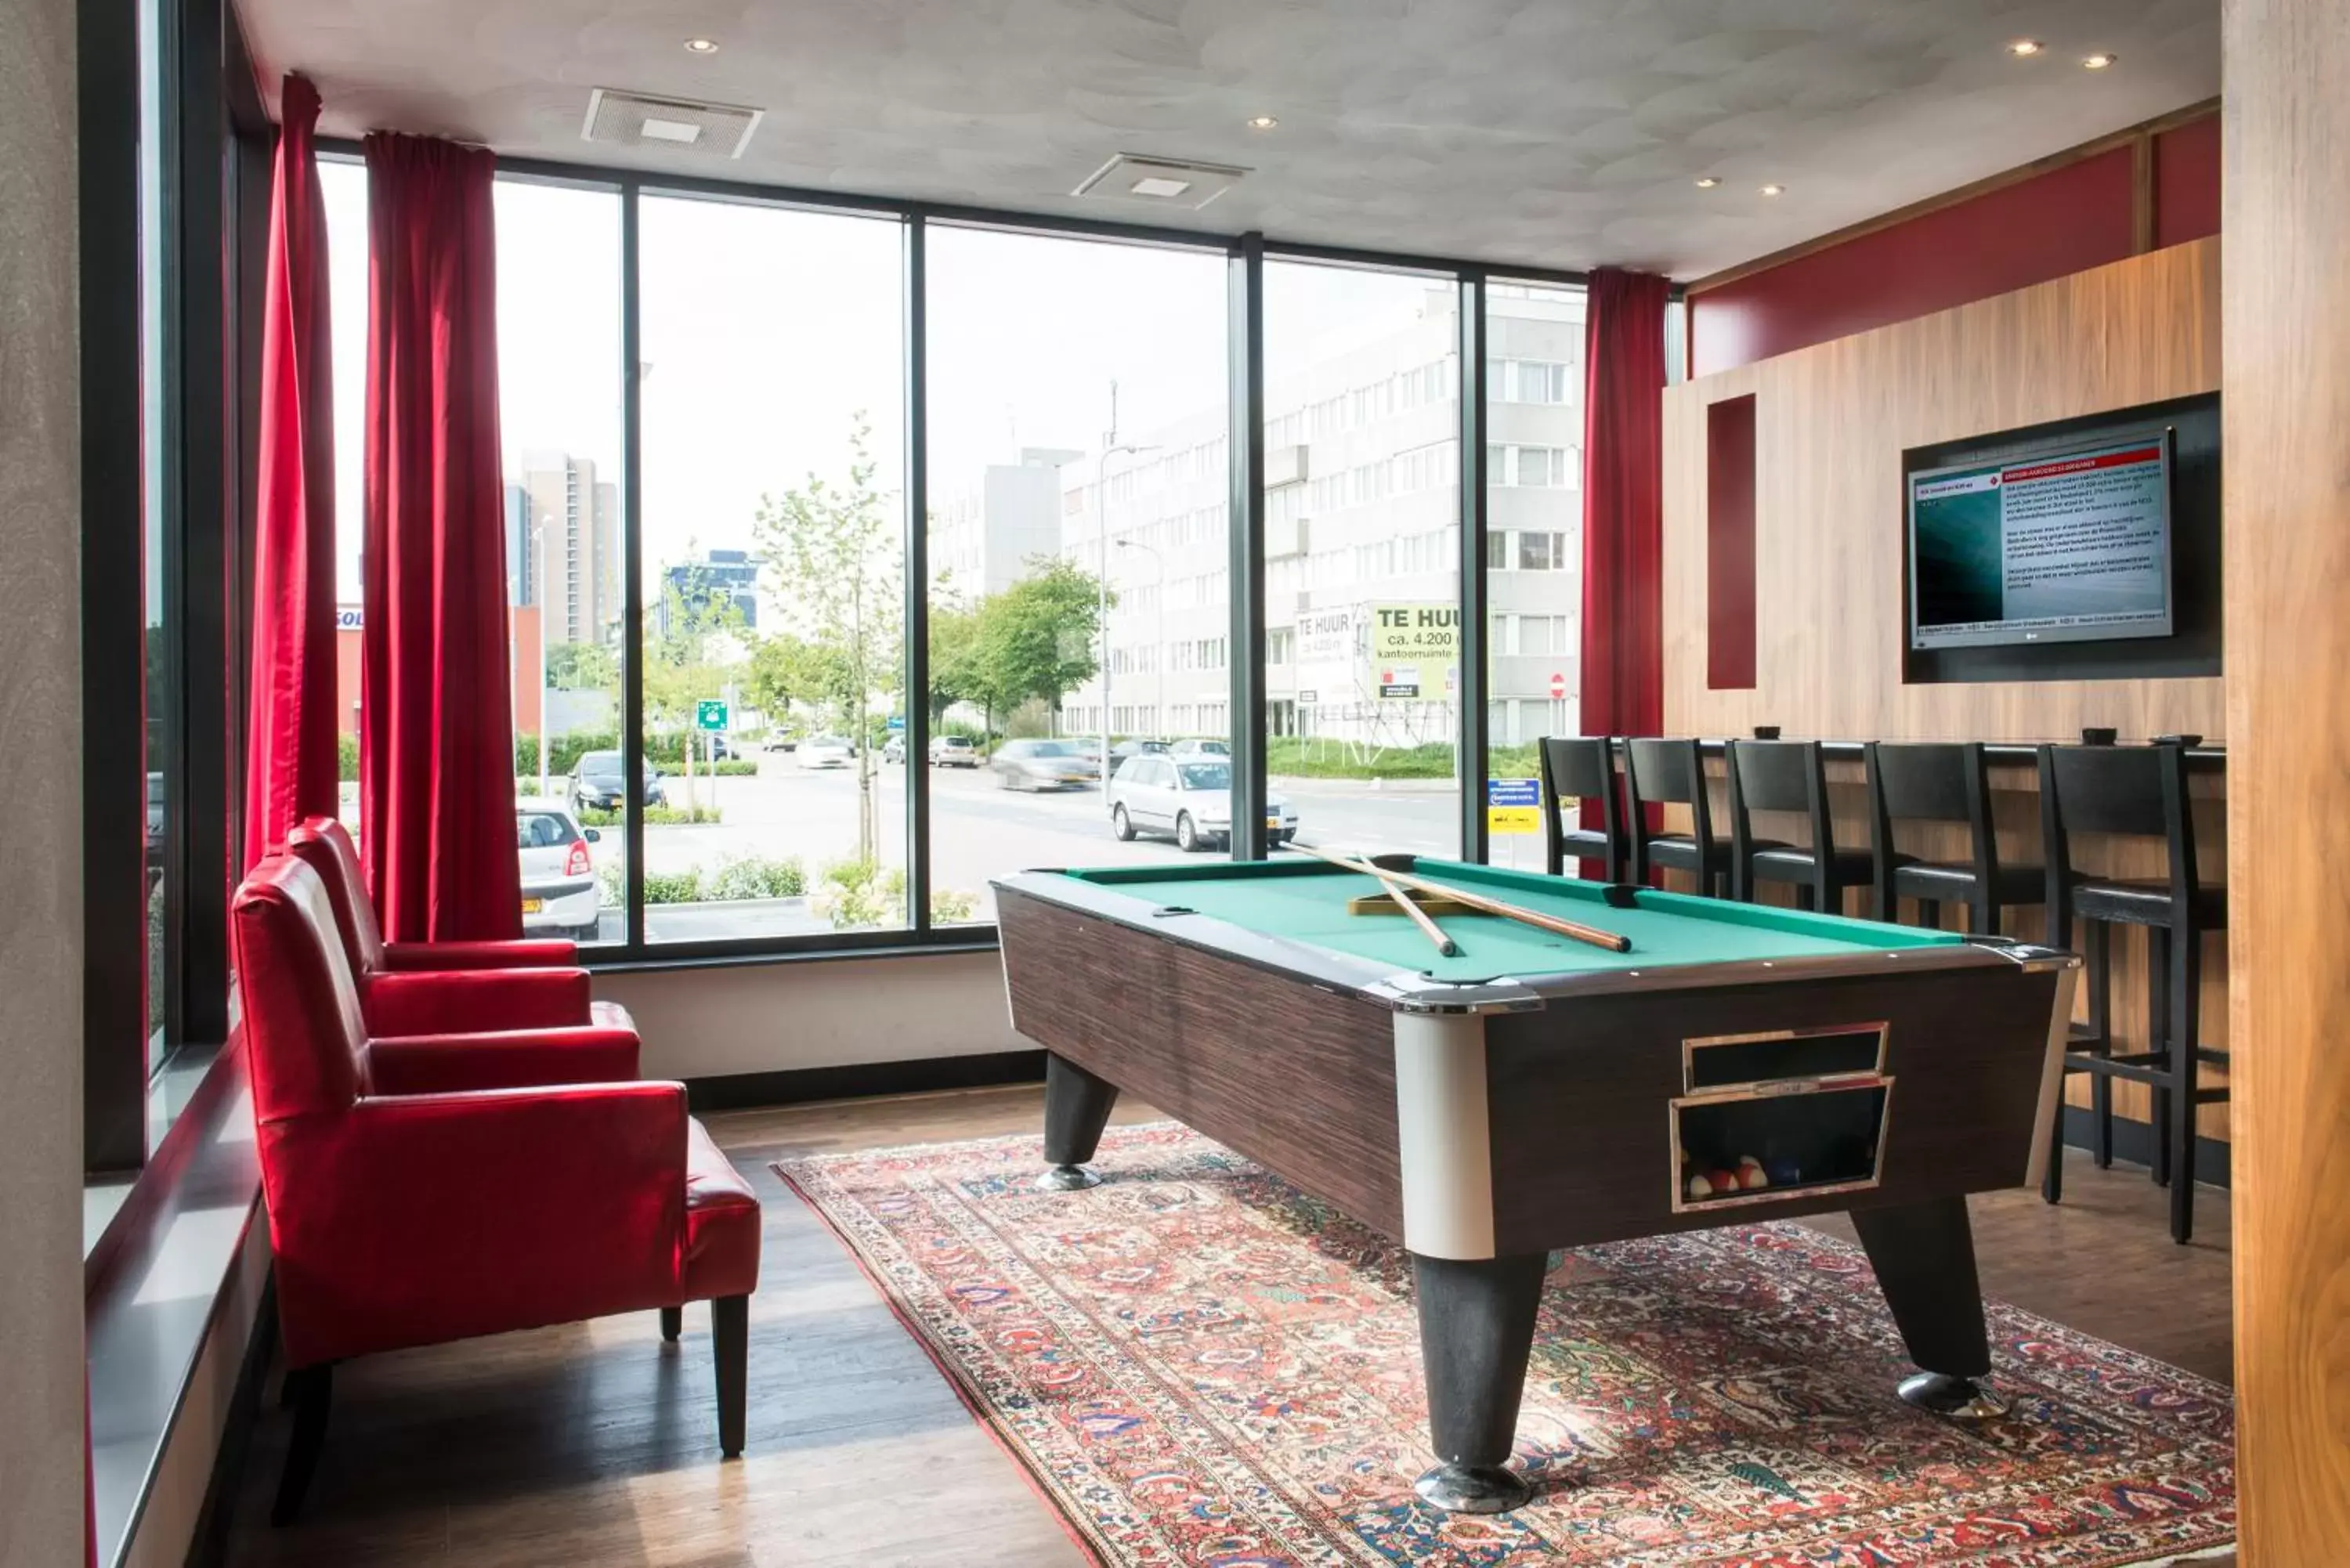 Game Room, Billiards in Bastion Hotel Den Haag Rijswijk